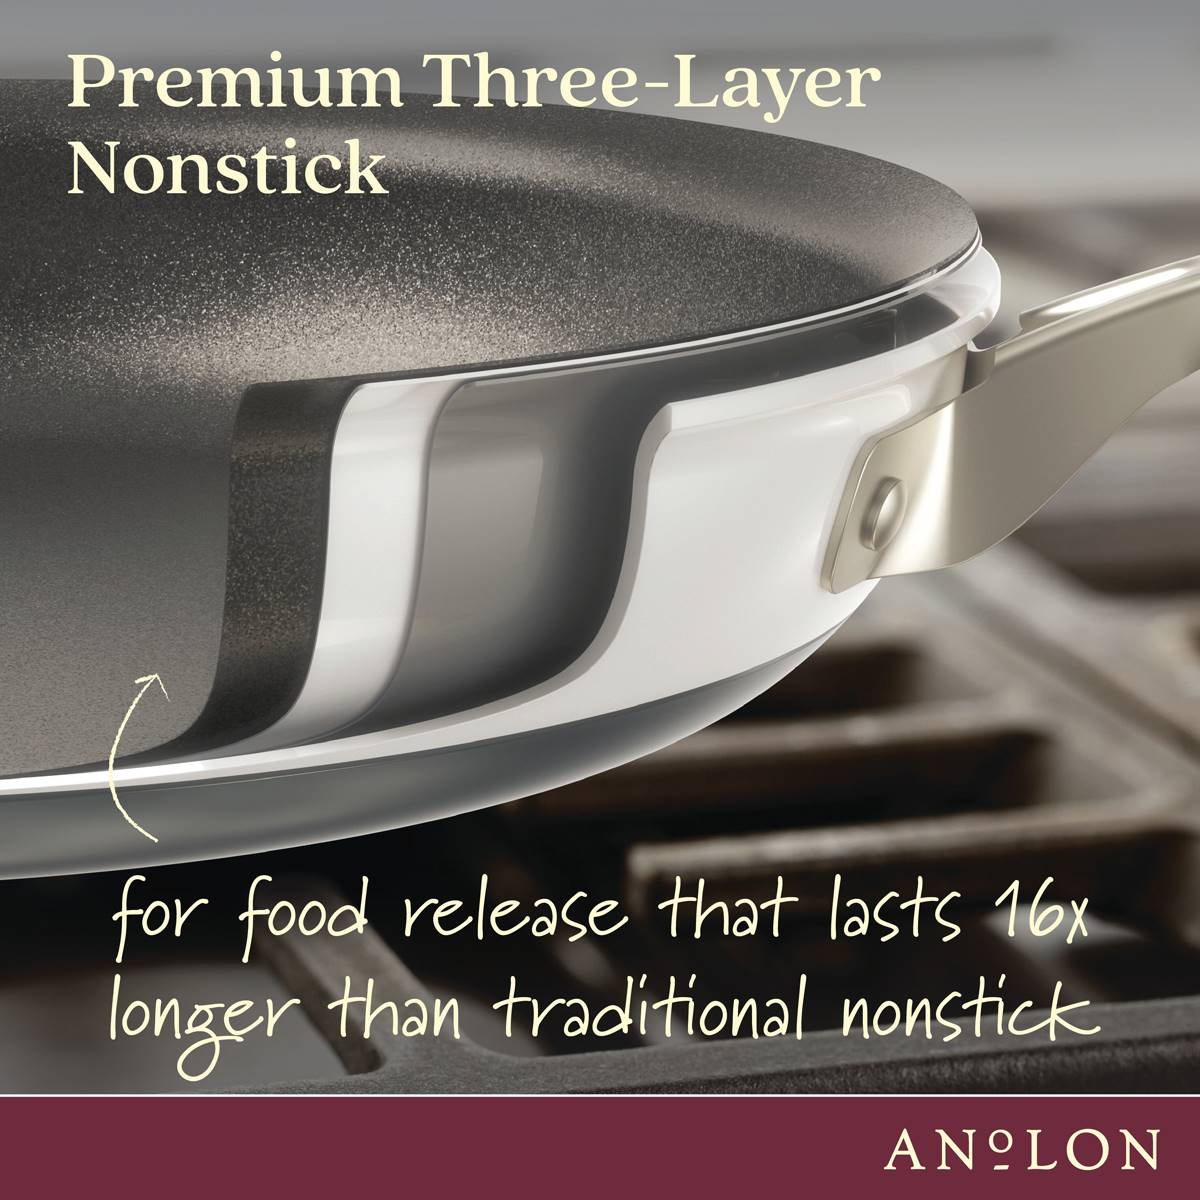 Anolon(R) Achieve 10pc. Hard Anodized Nonstick Cookware Set